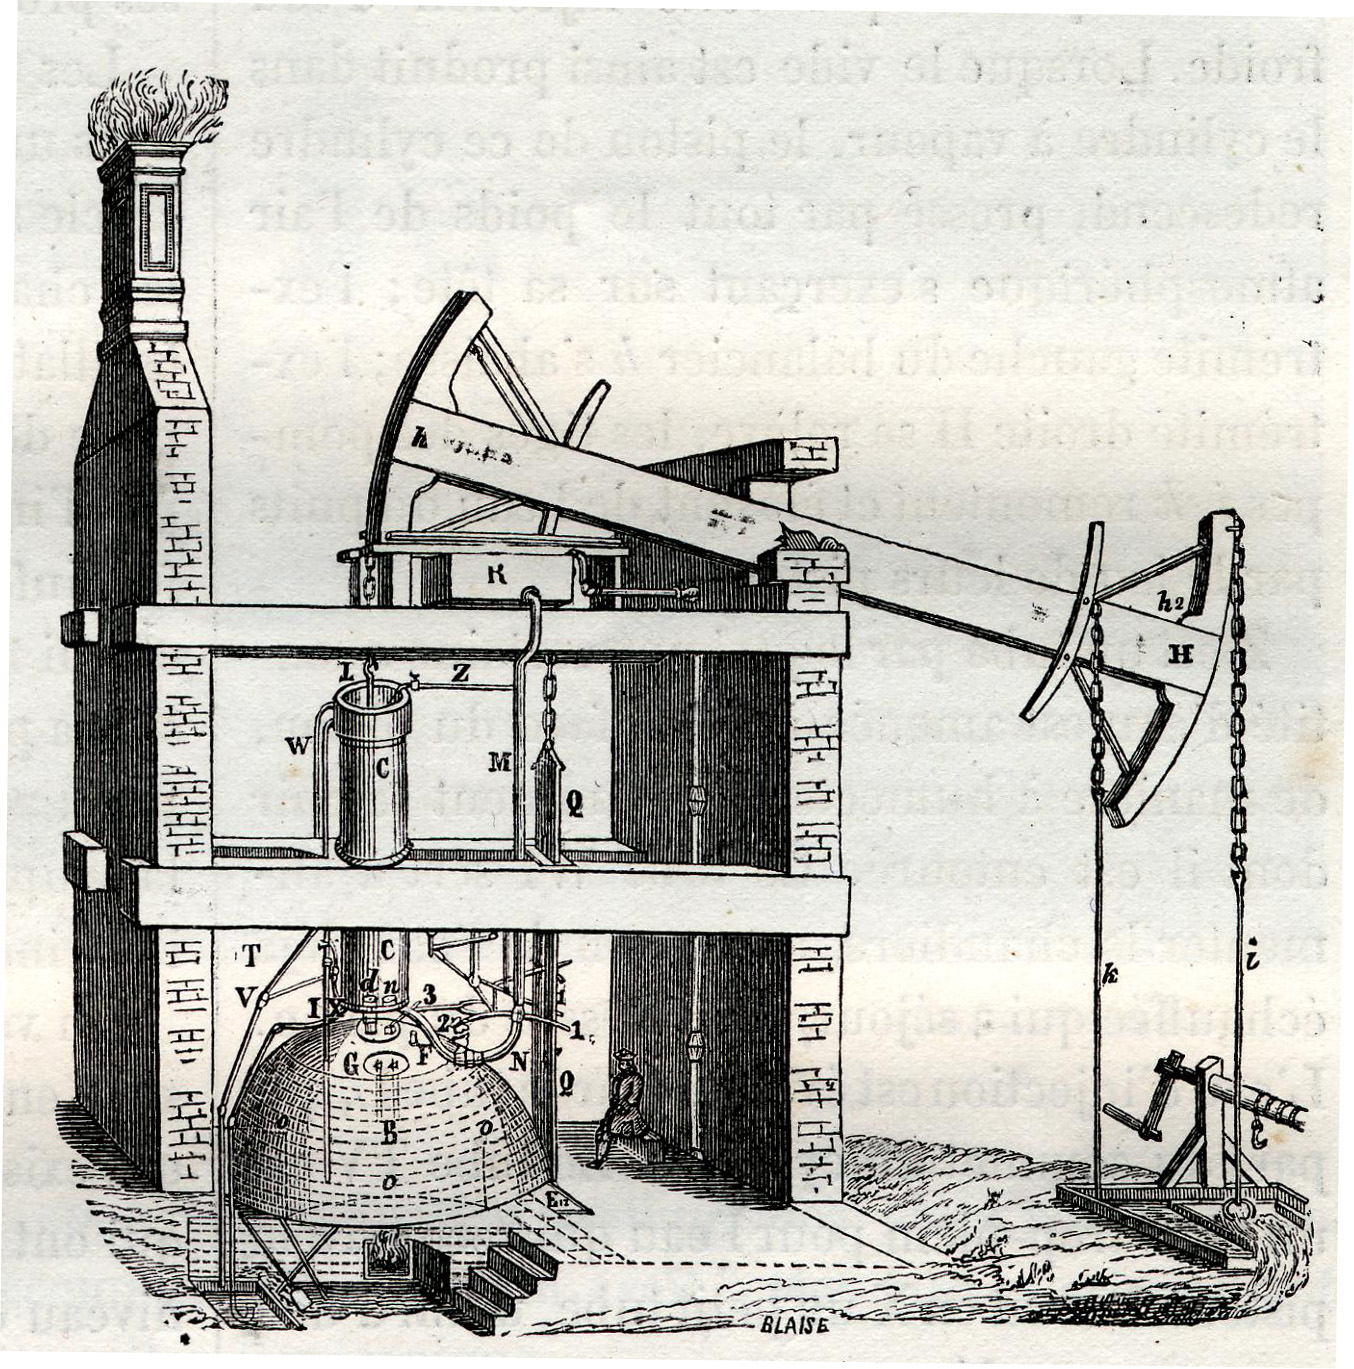 A sketch from Louis Figuer's 1868 book "Merveilles de la science".